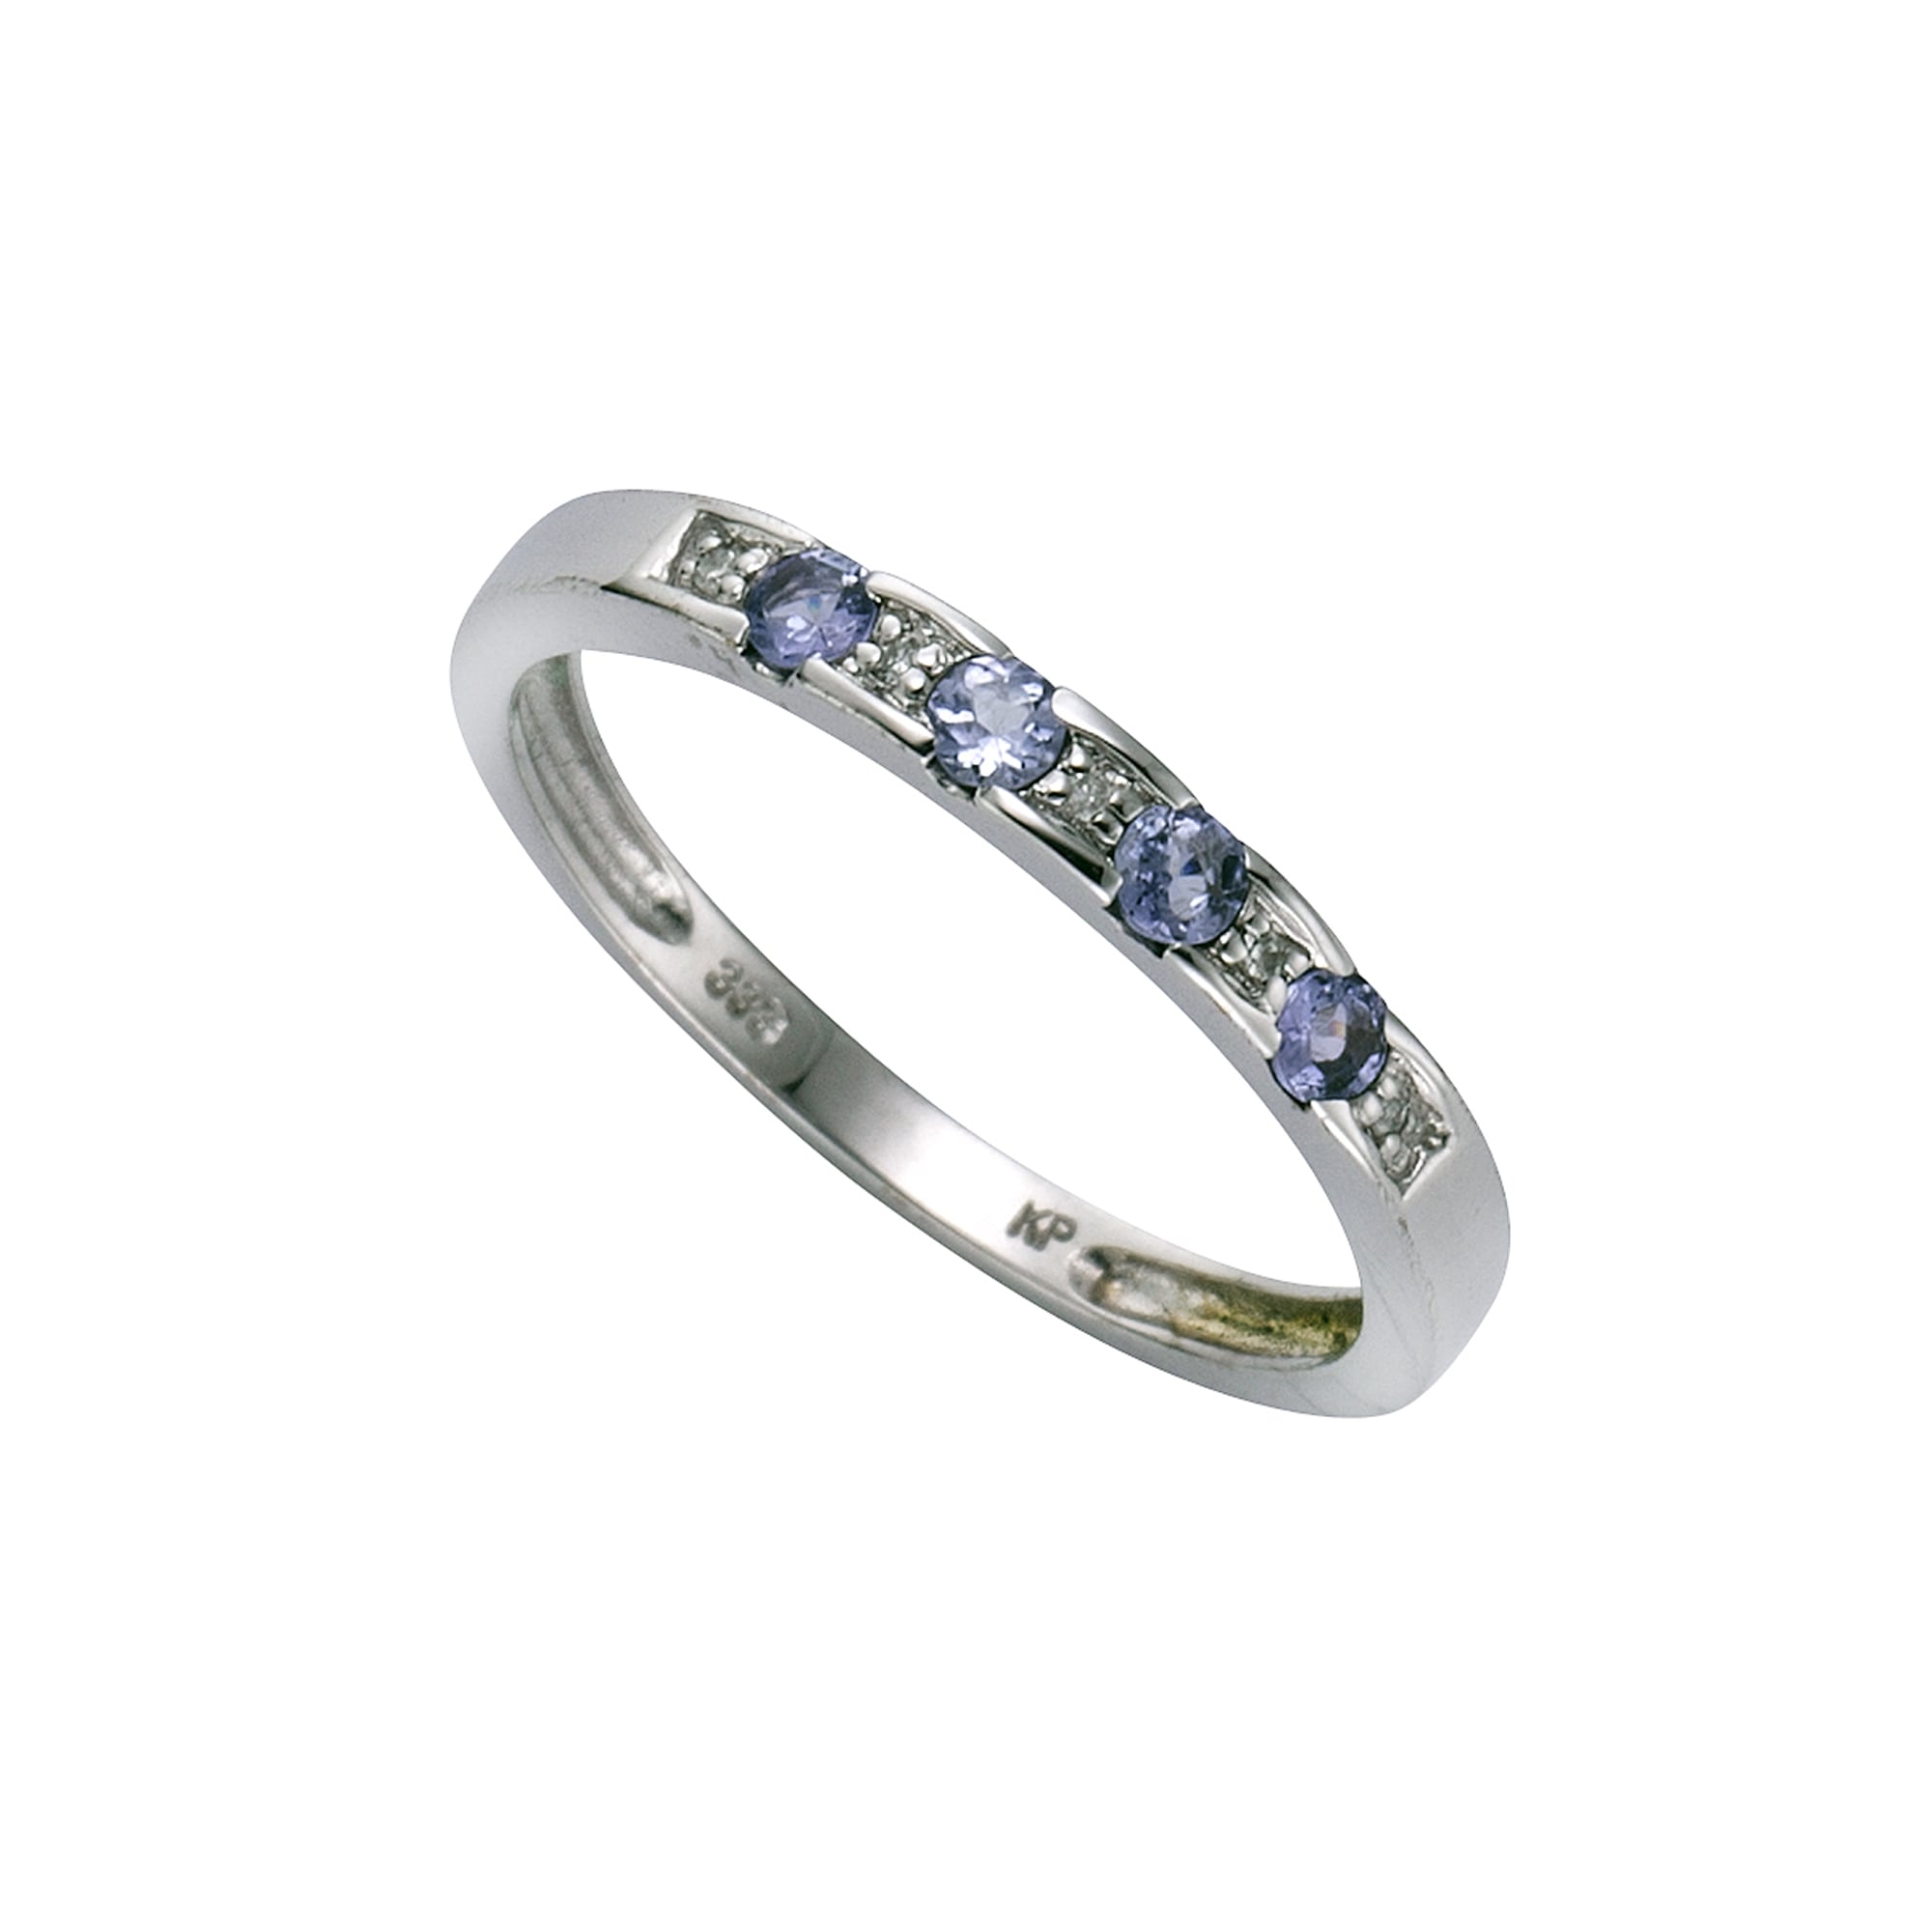 K. Fingerring „333/- Weißgold Tansanit Diamant 0,025ct.“ weiß + weiß + blau 0,025 ct P2 = erkennbare Einschlüsse 058 (18,5) – 0,025 ct P2 = erkennbare Einschlüsse